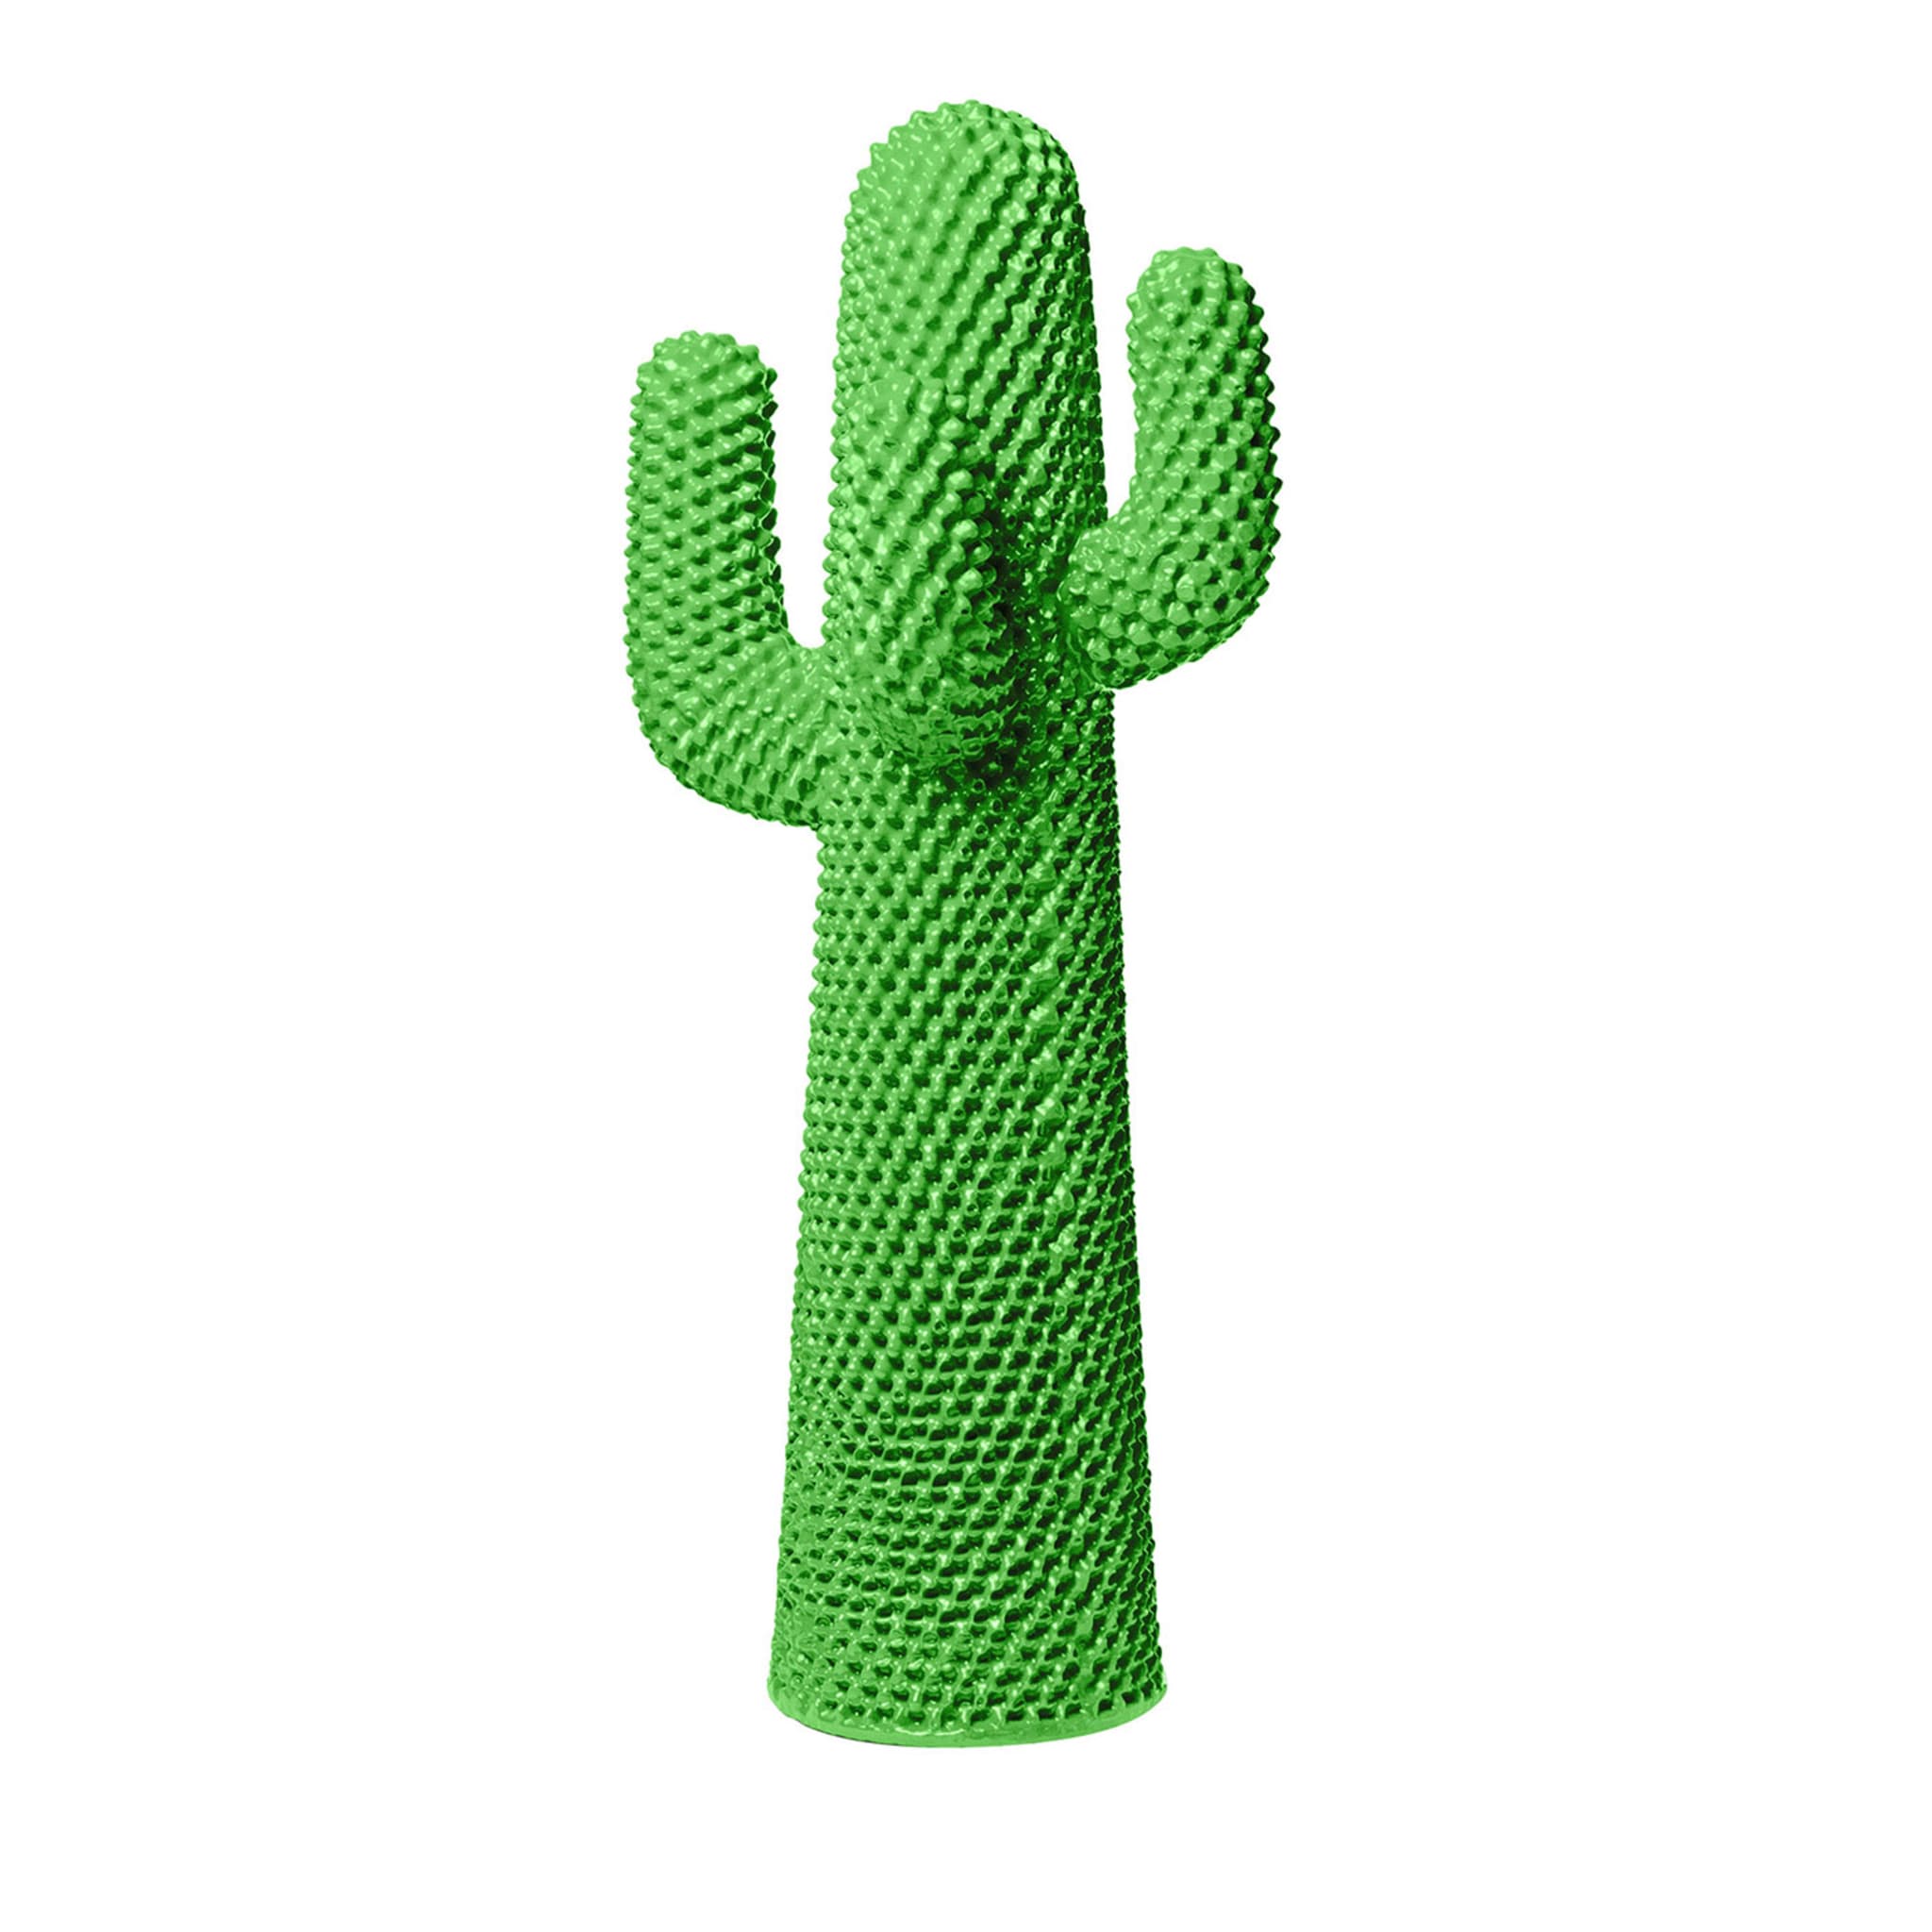 Autre porte-manteau en cactus vert par Drocco/Mello - Vue principale